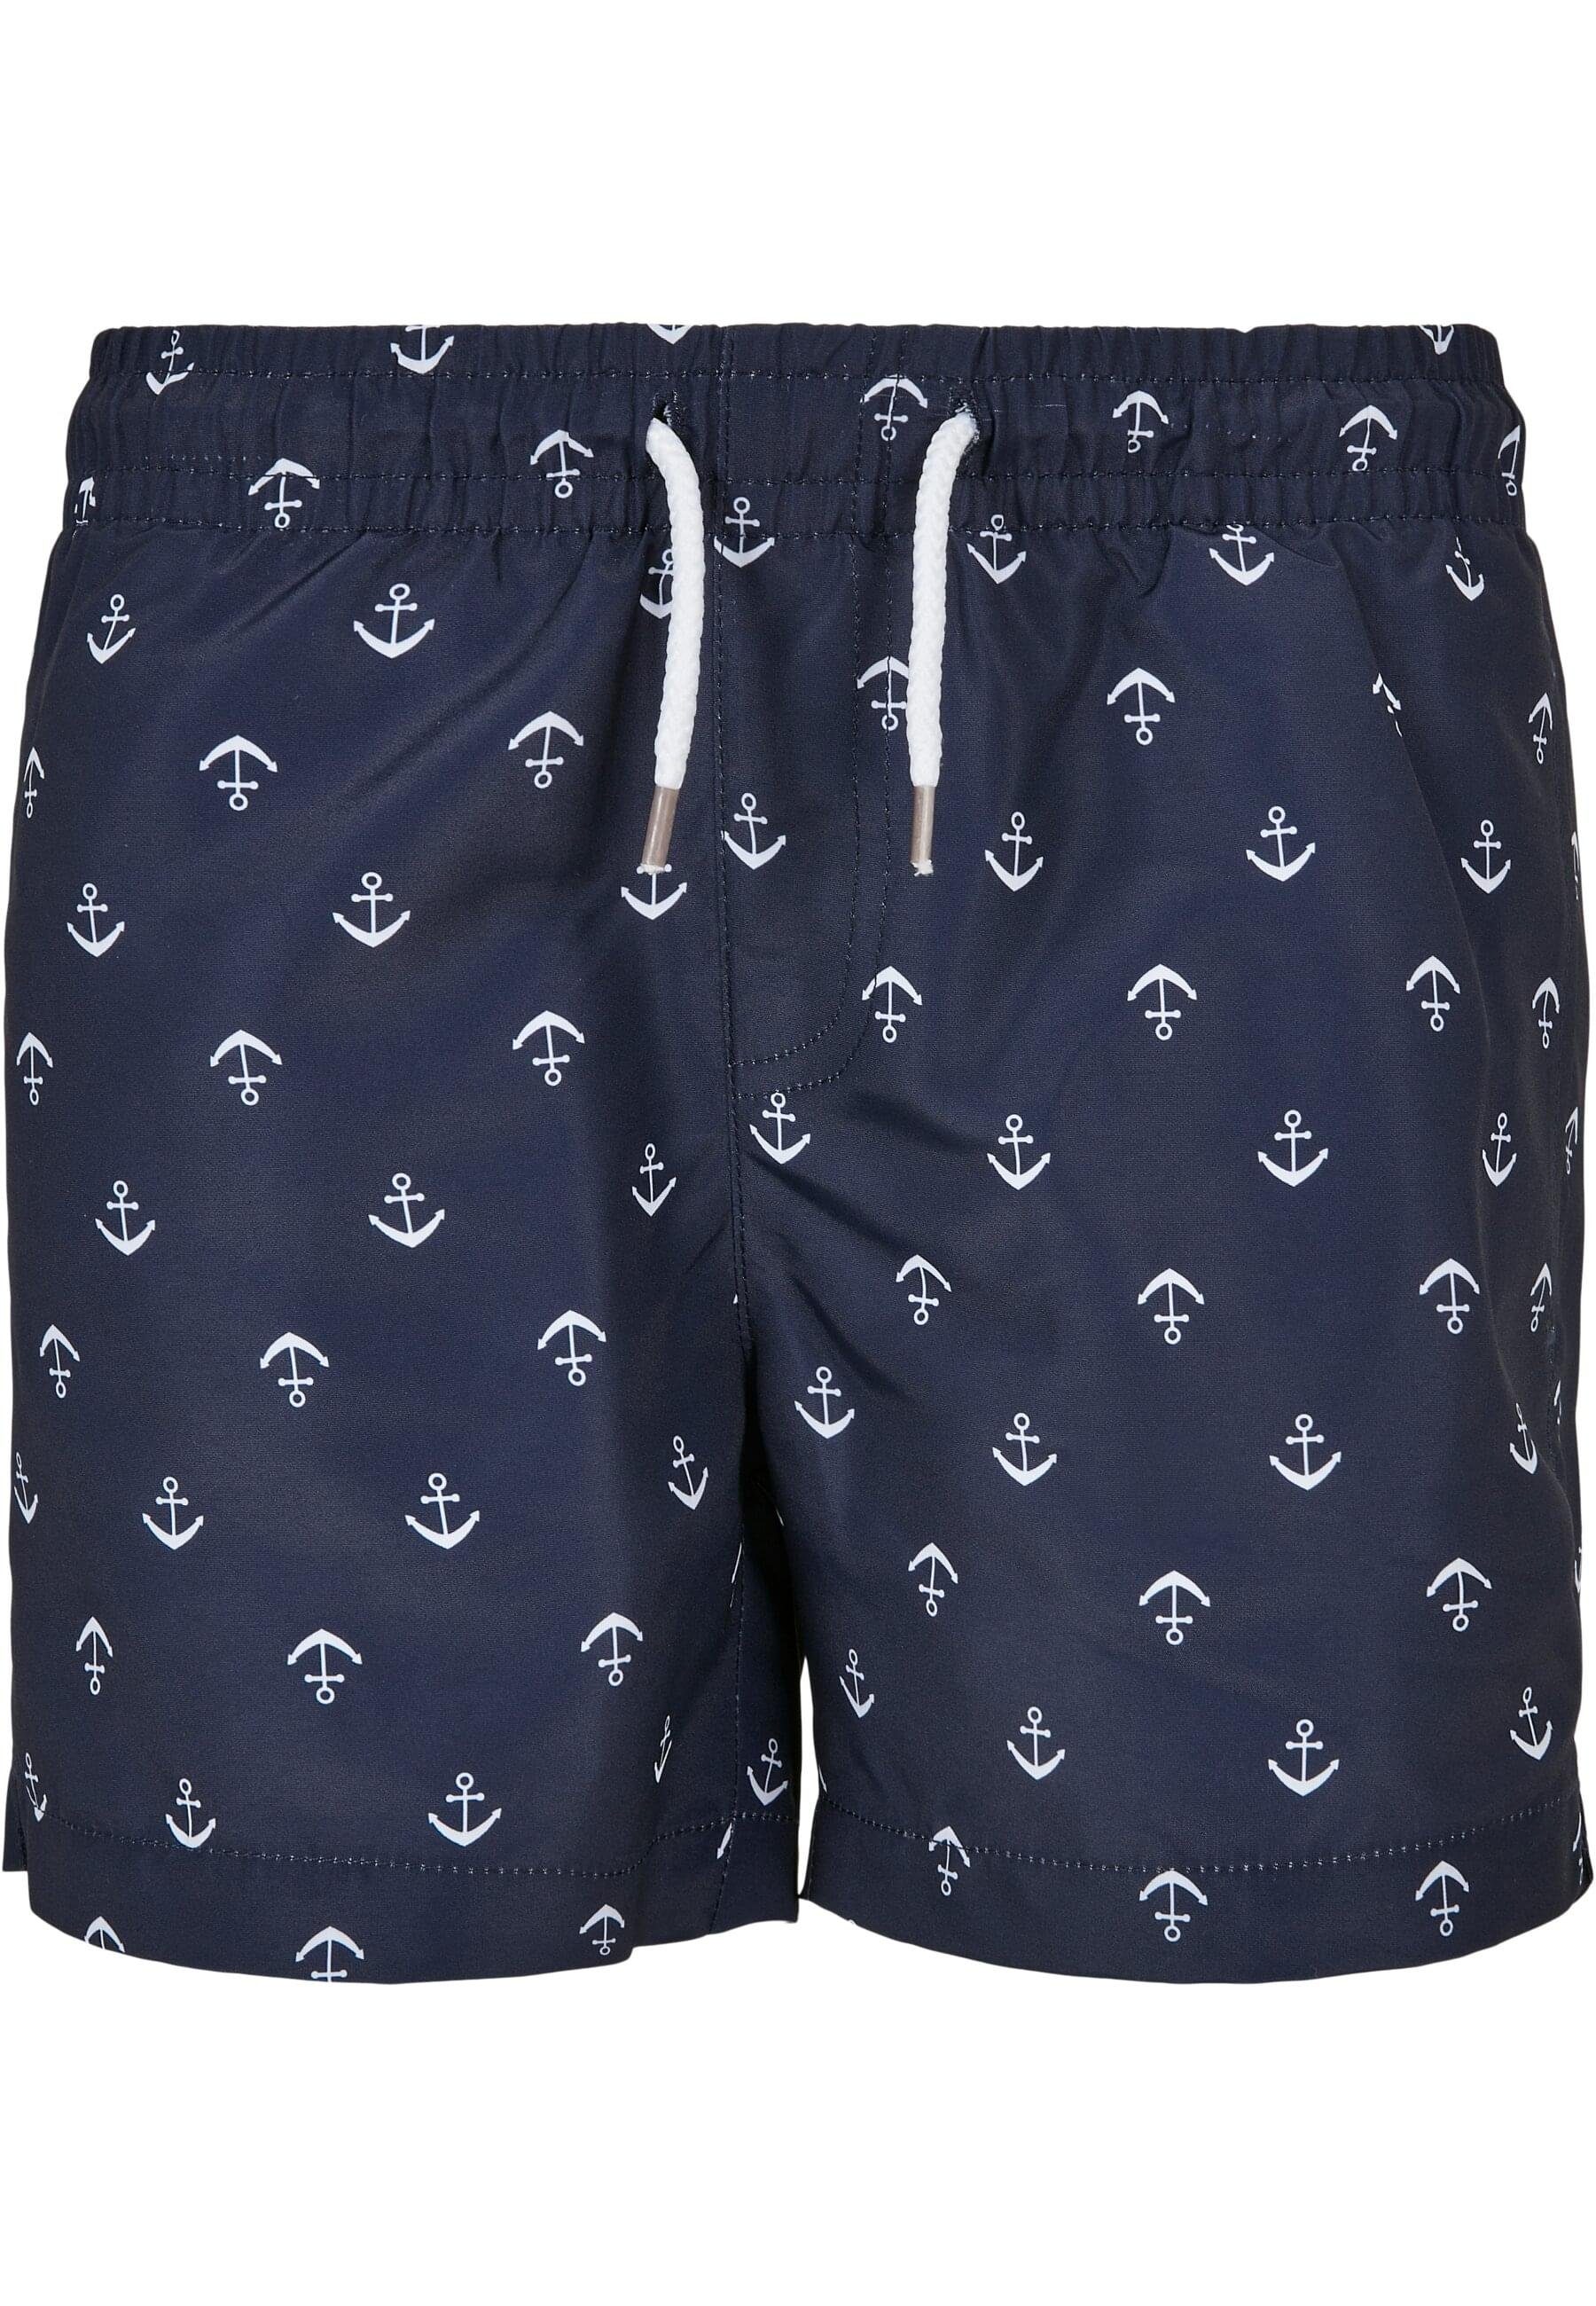 Badeshorts Herren anchor/navy Pattern Swim CLASSICS URBAN Shorts Boys